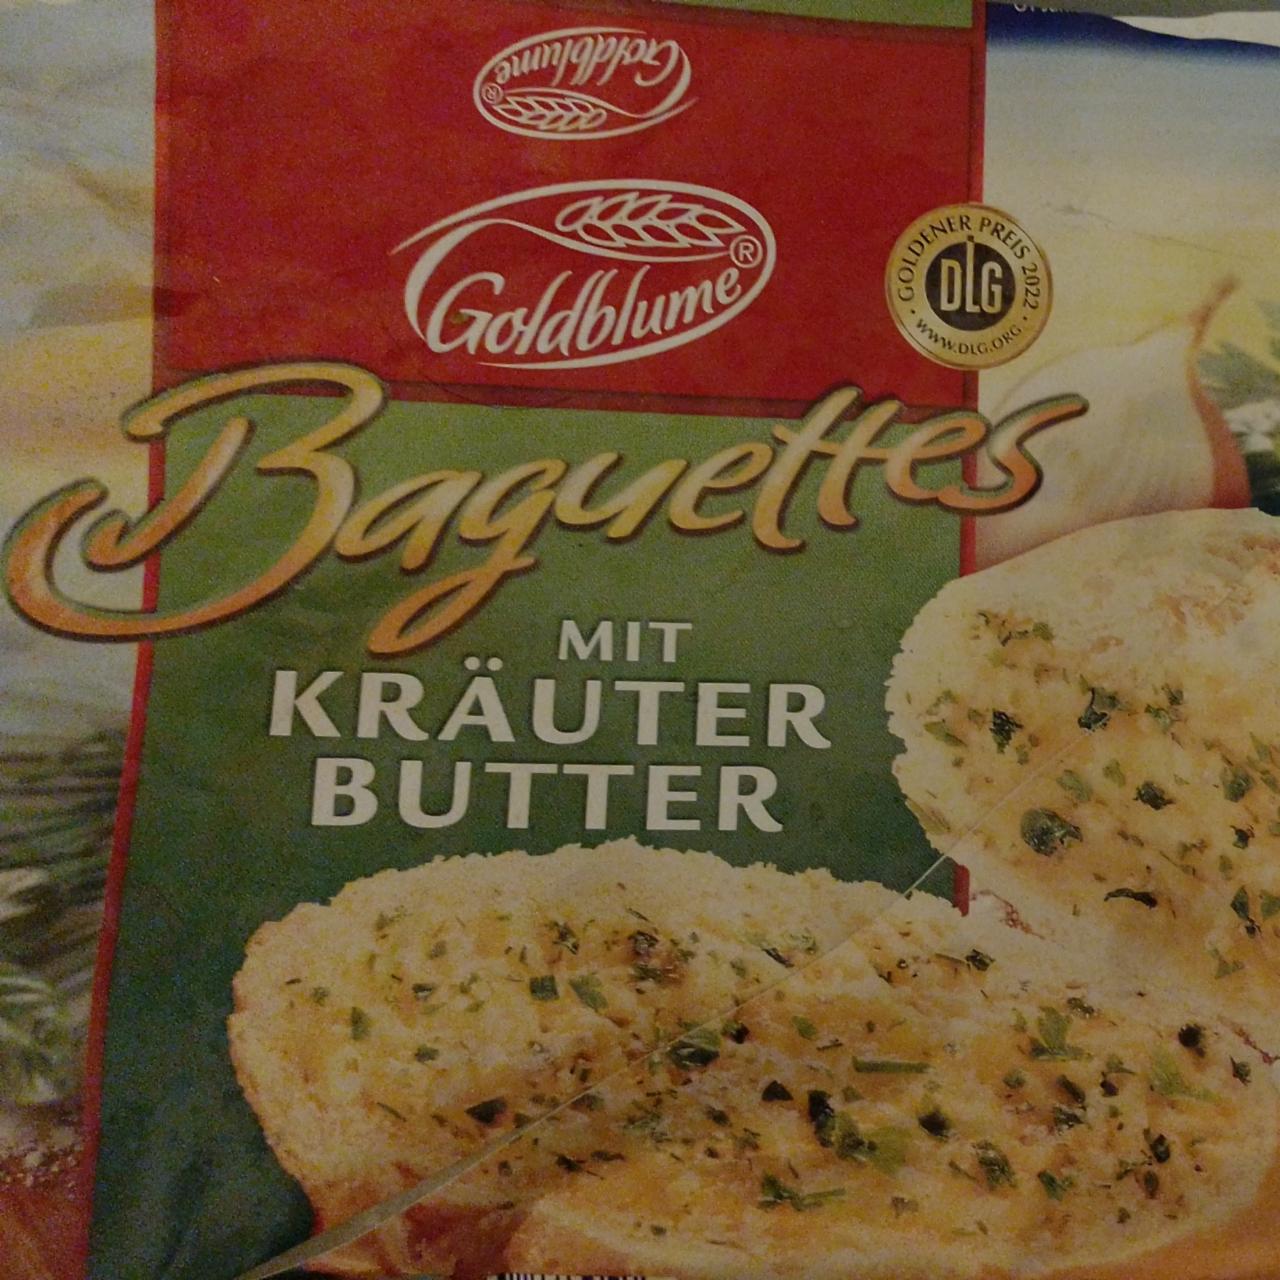 Fotografie - Baguettes mit Kräuter Butter Goldblume